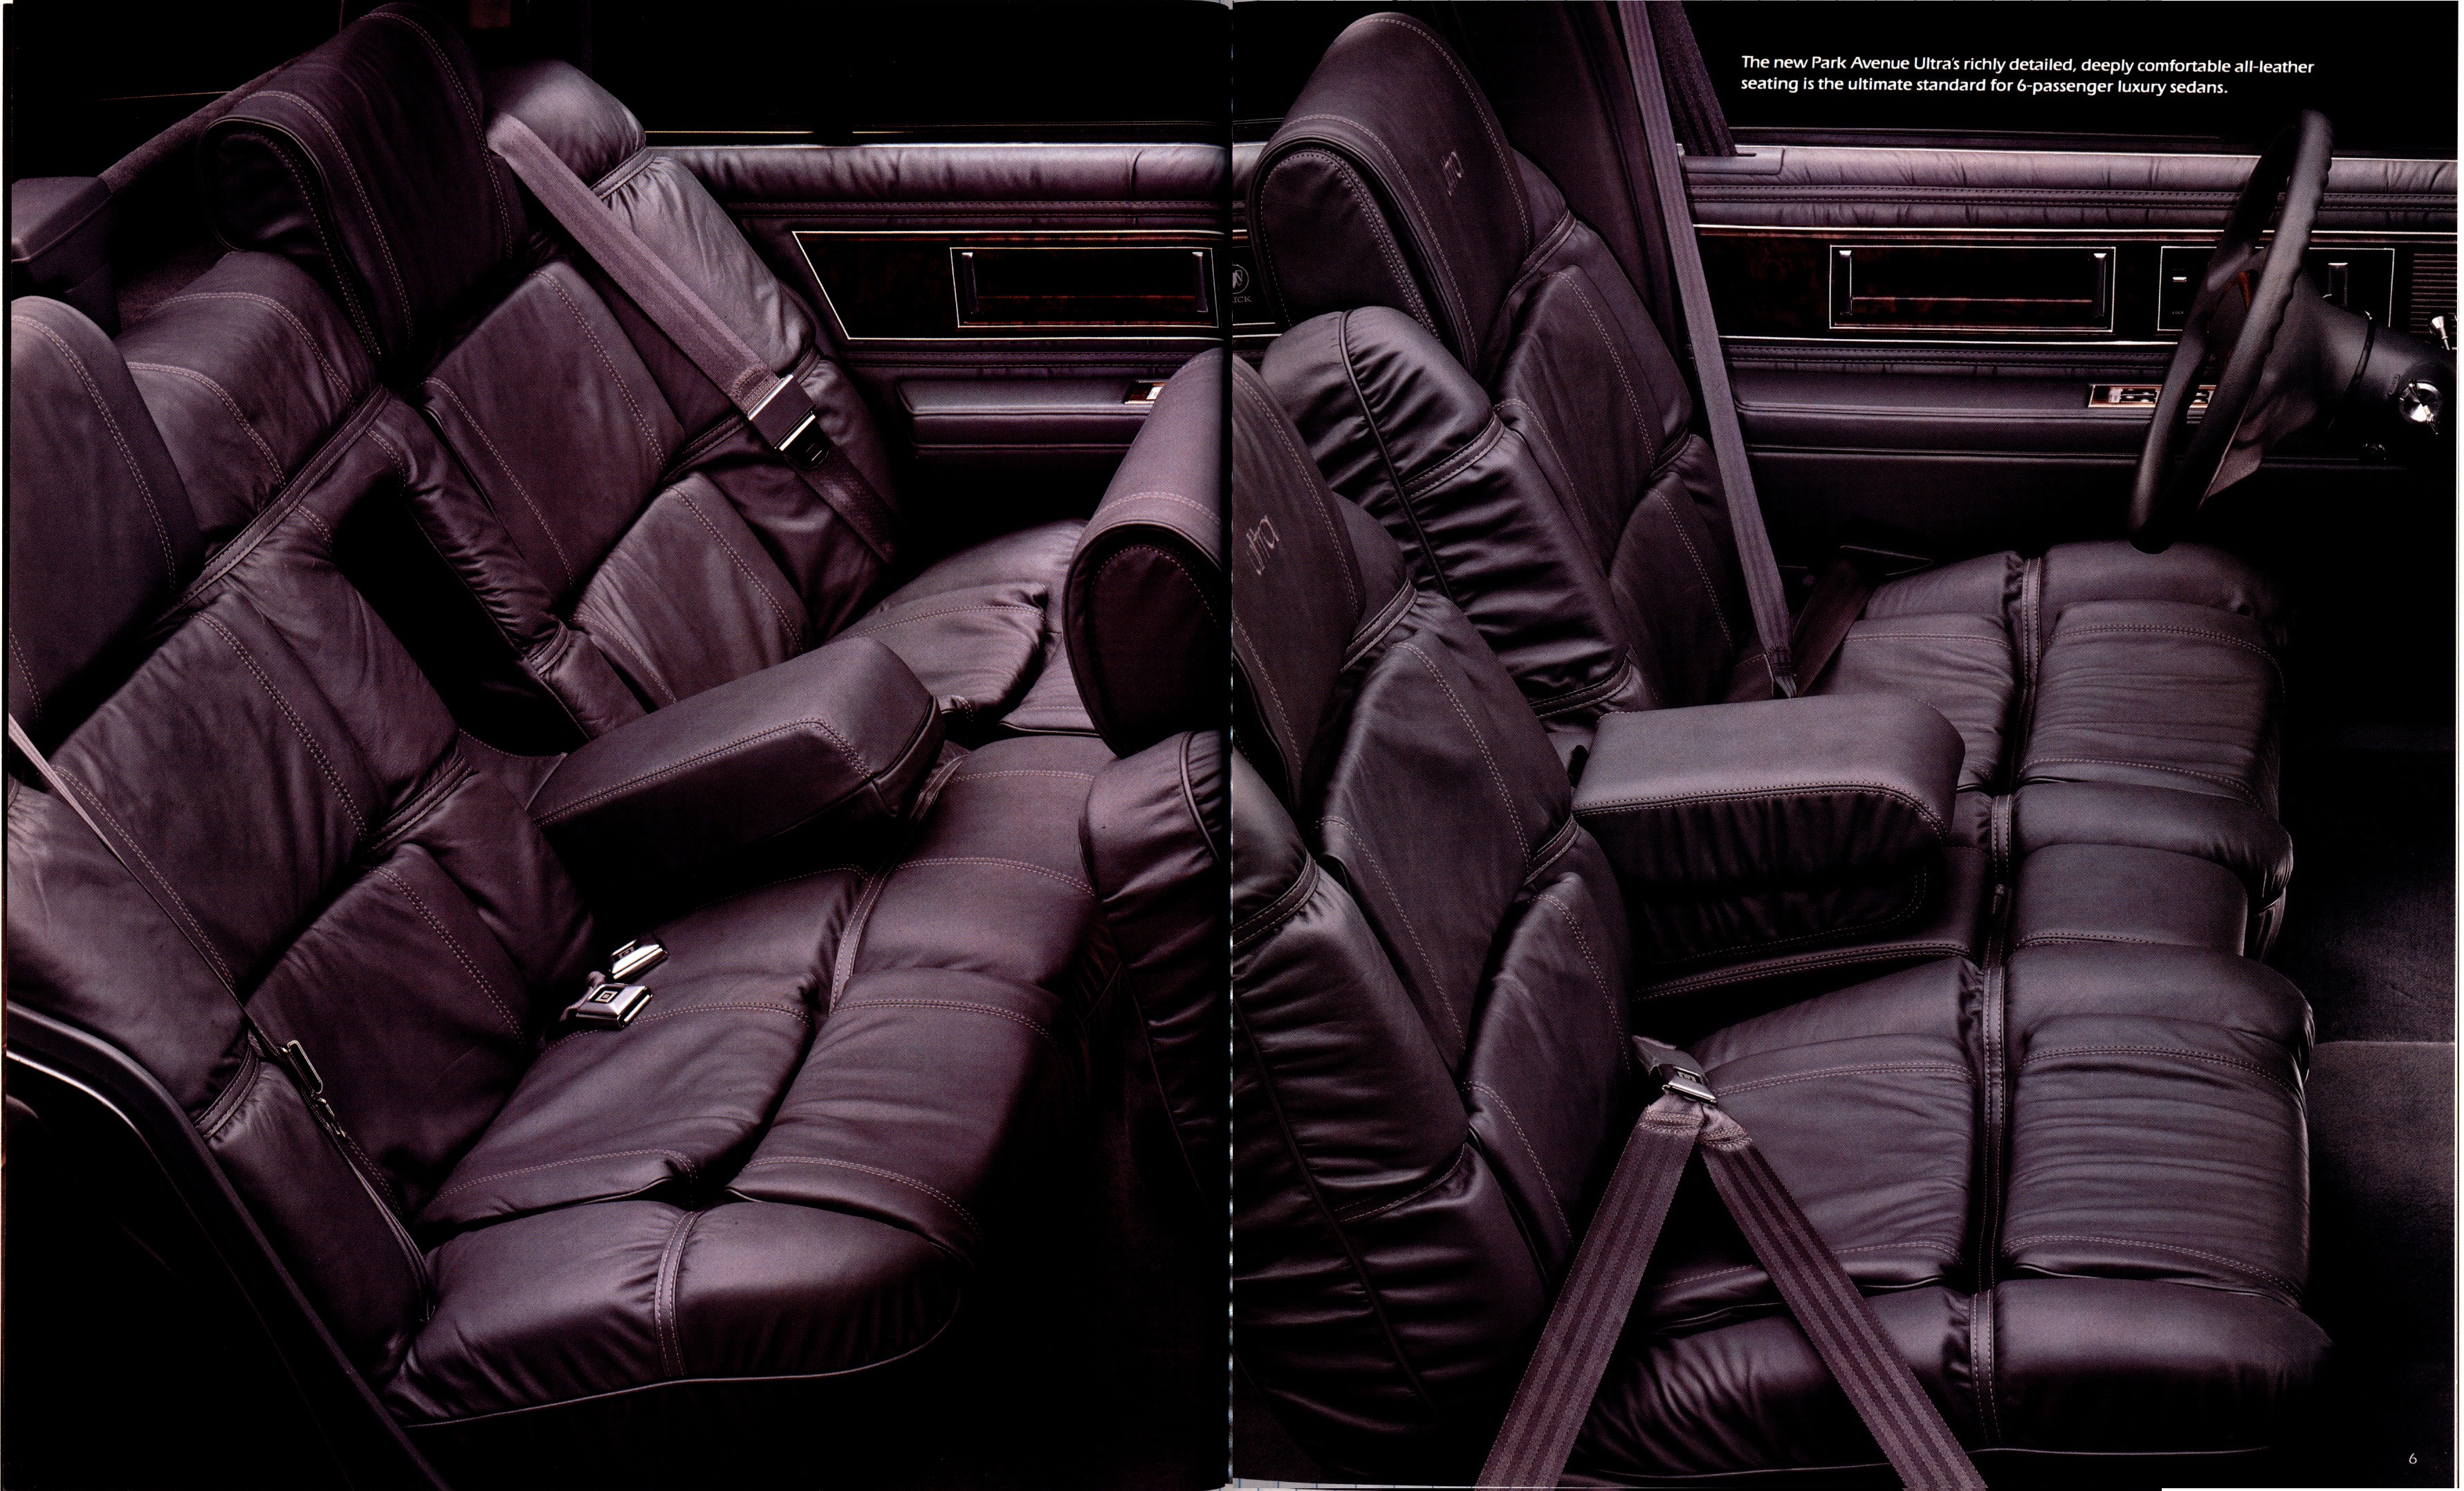 1989 Buick Full Line Prestige-26-27